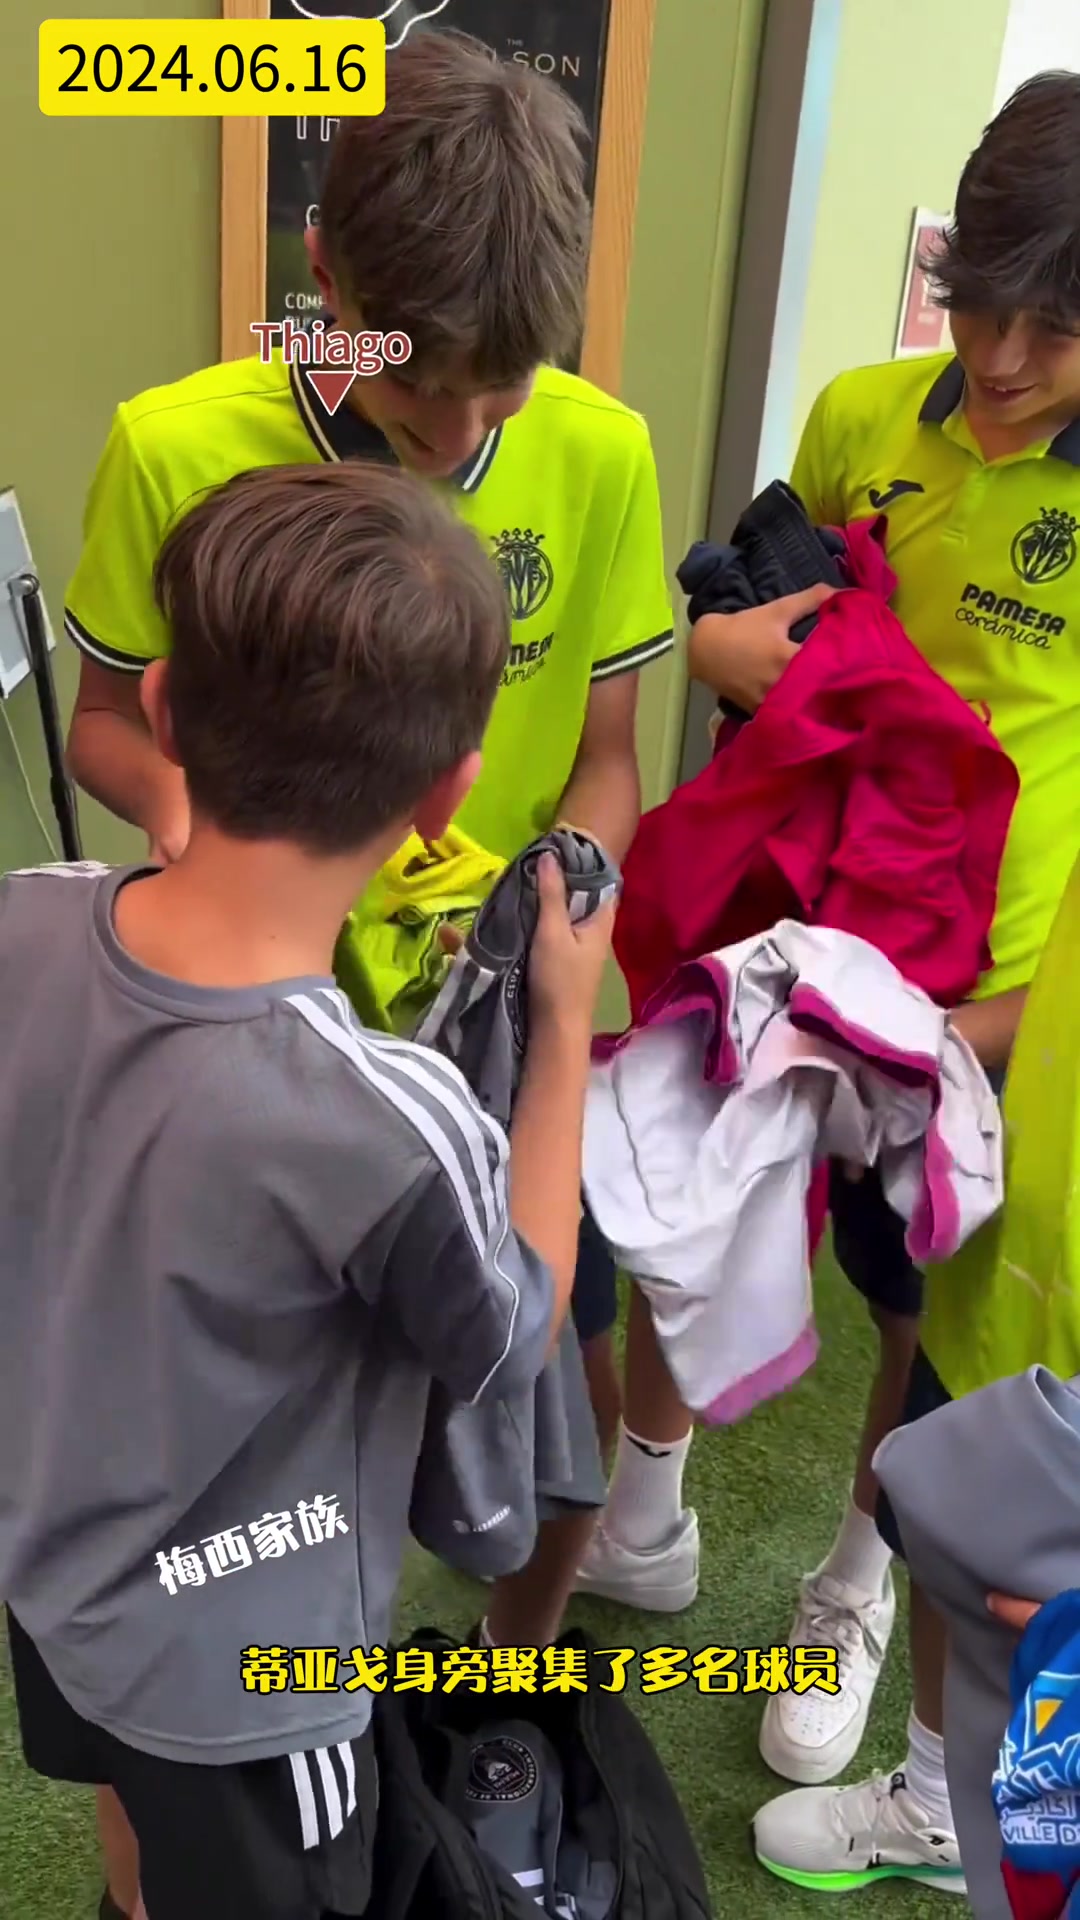 蒂亚戈梅西在比赛结束后和青训球员交换球衣